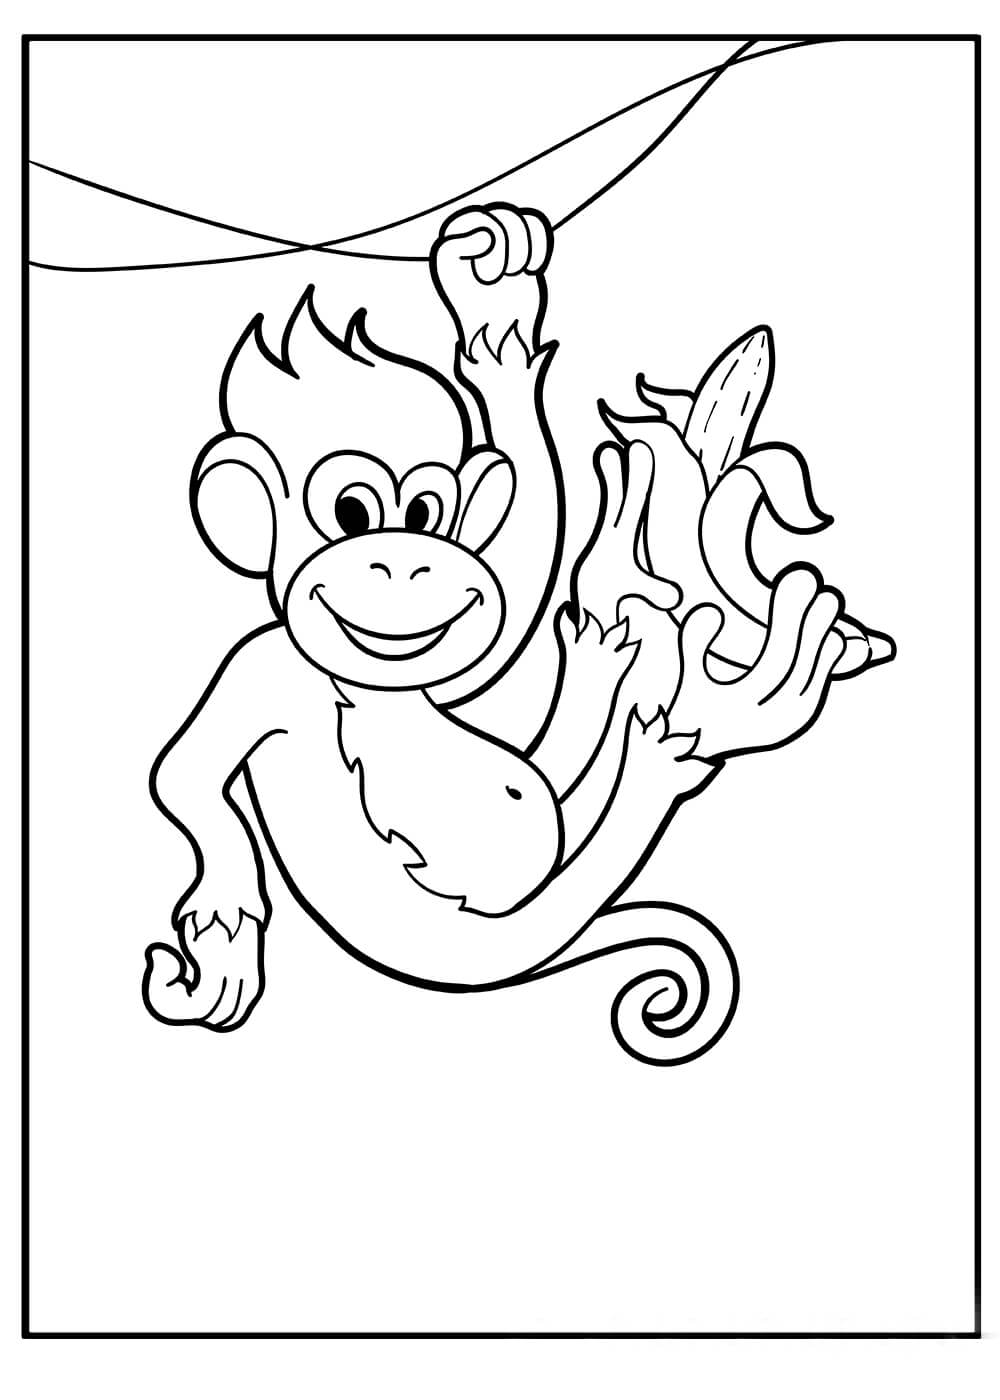 Macaco Escalando árvore de Galho com Banana para colorir